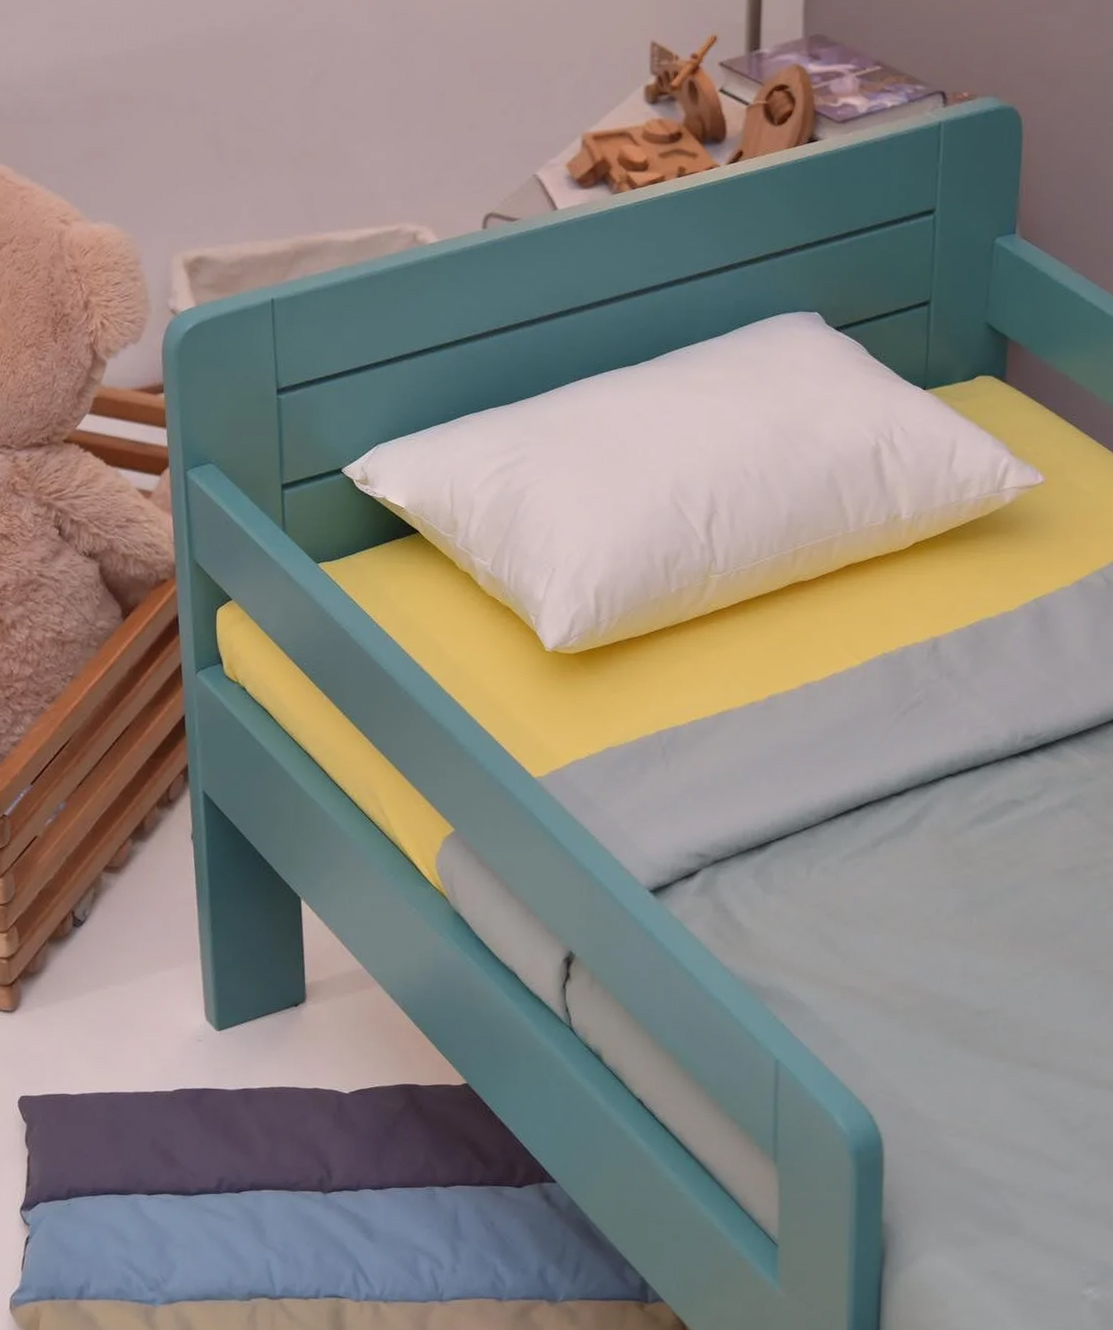 Детская кроватка ''Yeraz'' деревянная